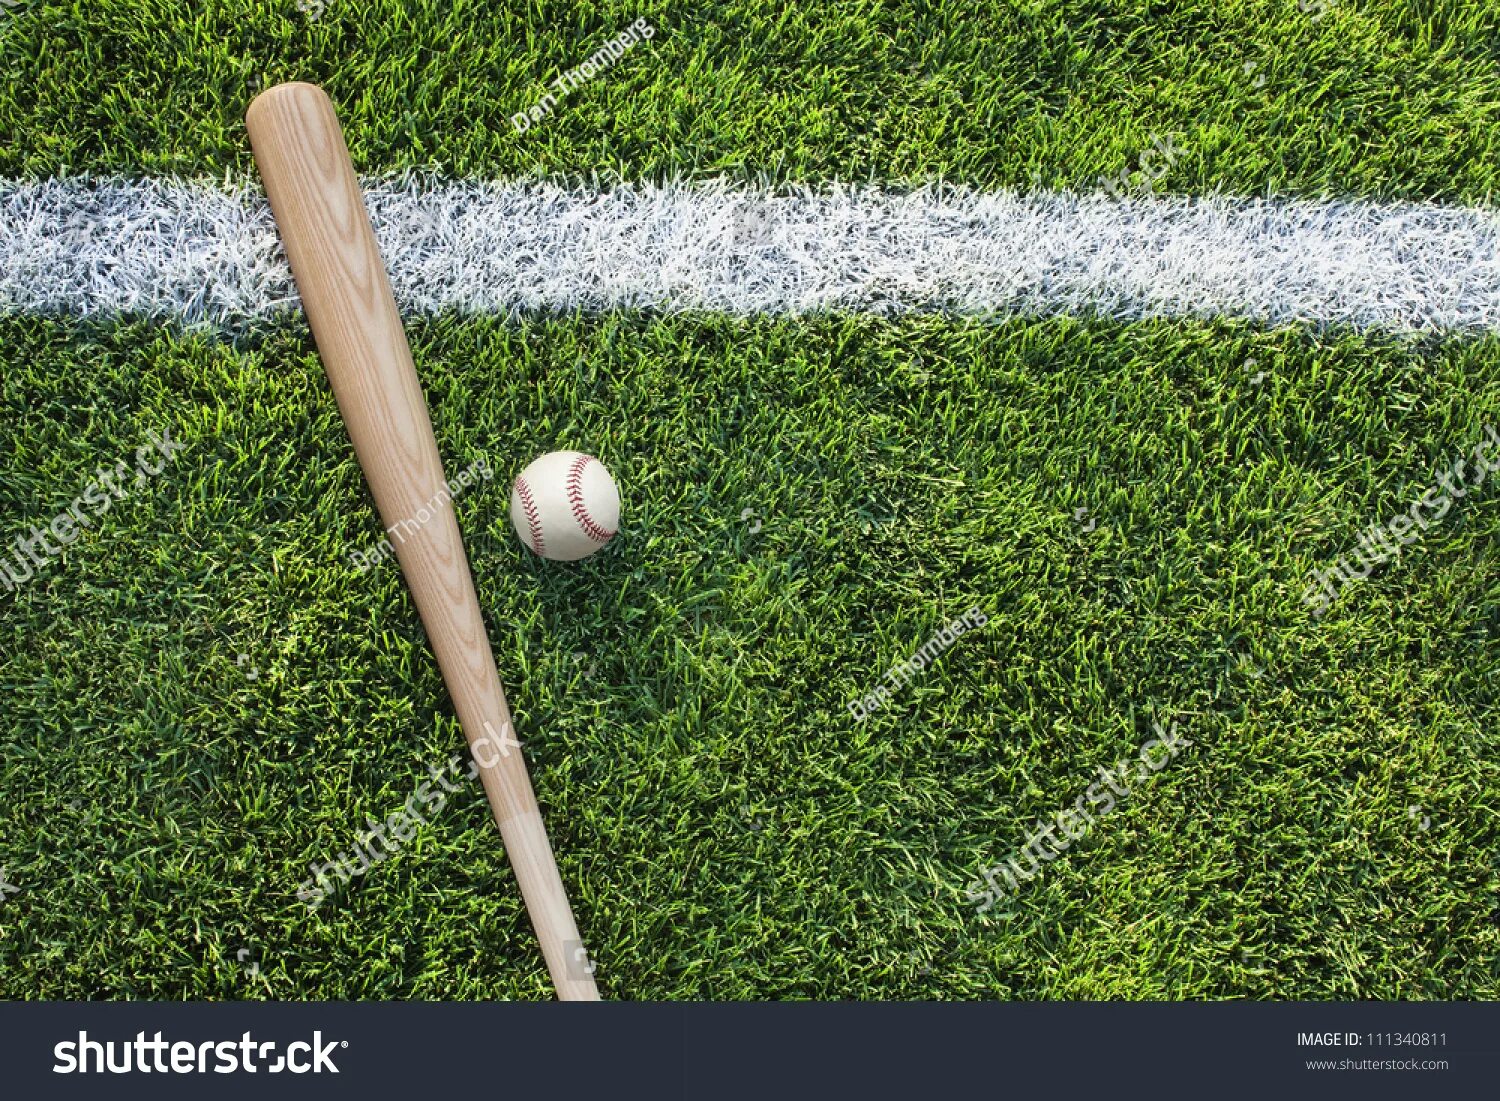 Сколько стоит бита и мяч. Мяч на траве вид сверху. Трава с мячом сверху. Бита для крикета на траве. Бита и мяч.